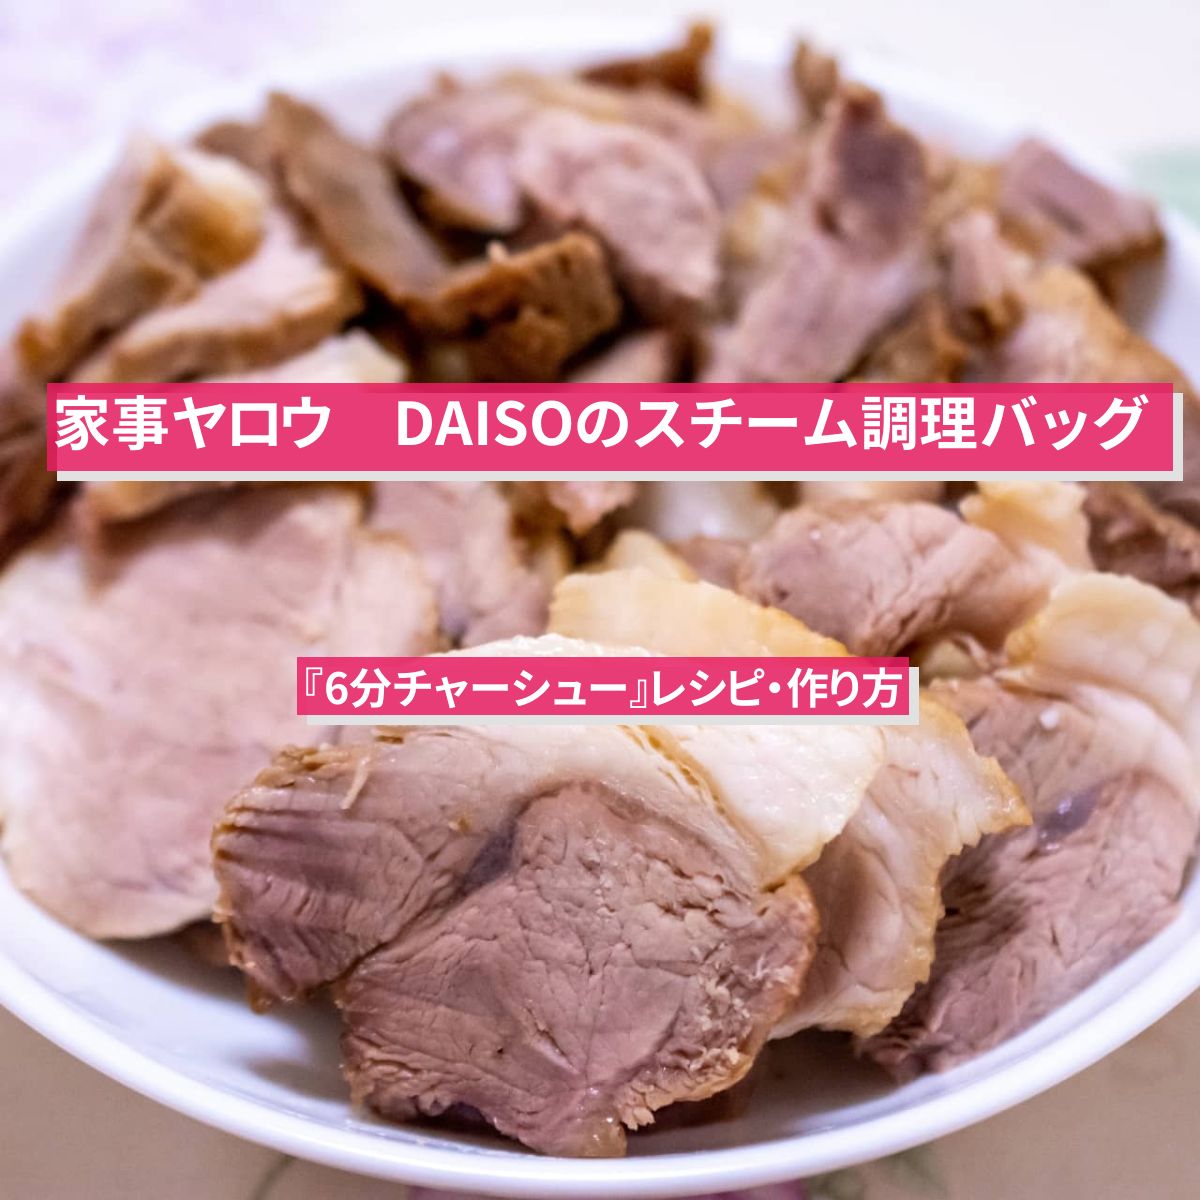 【家事ヤロウ】DAISOのスチーム調理バッグで『6分角煮風チャーシュー』レシピ・作り方